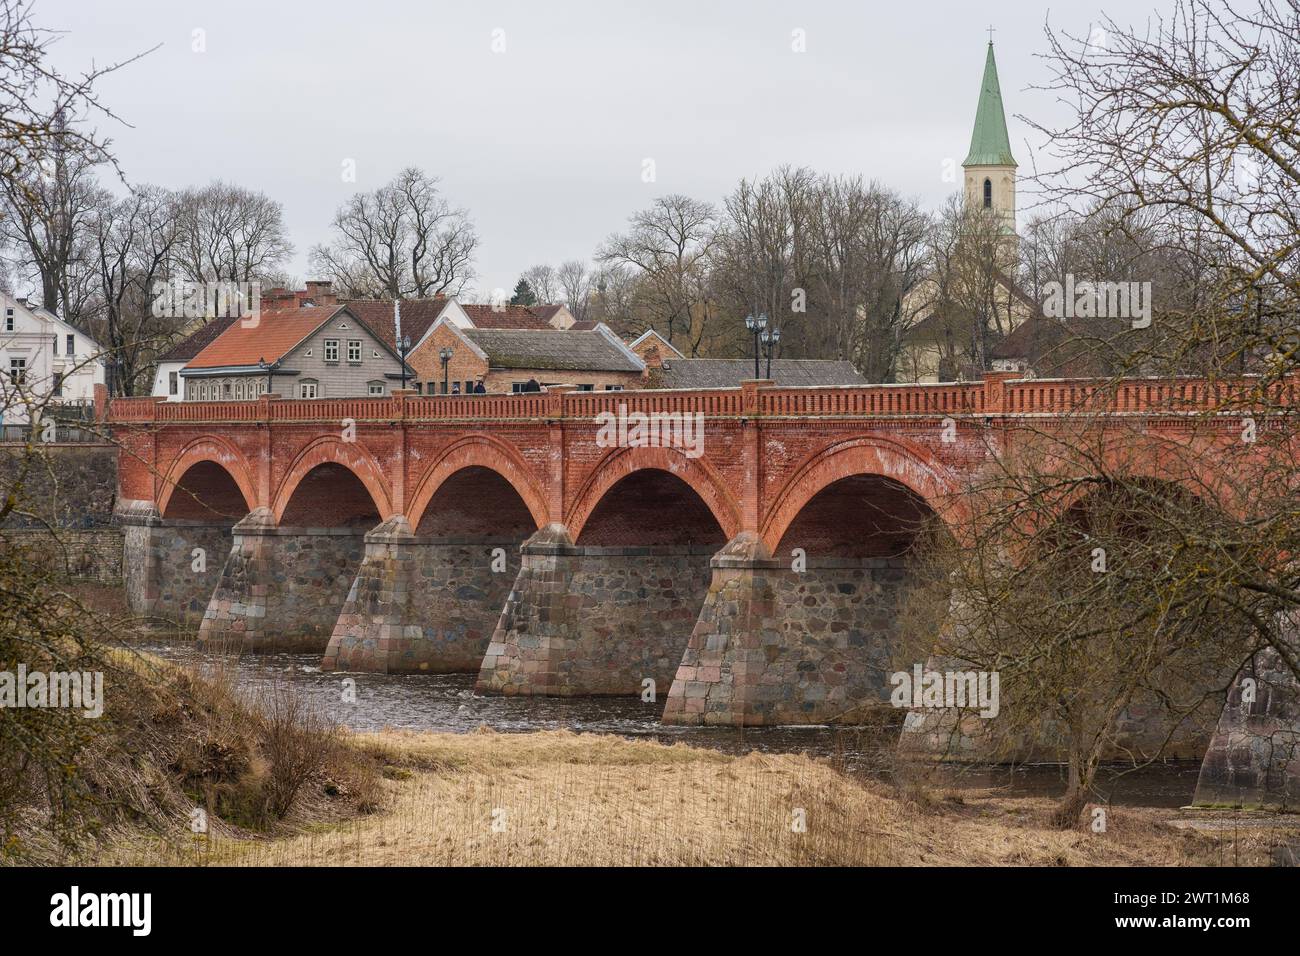 Un pont tissé d'histoires de siècles passés, la beauté de briques rouges de Kuldiga murmure des histoires de l'héritage letton et de la résilience Banque D'Images